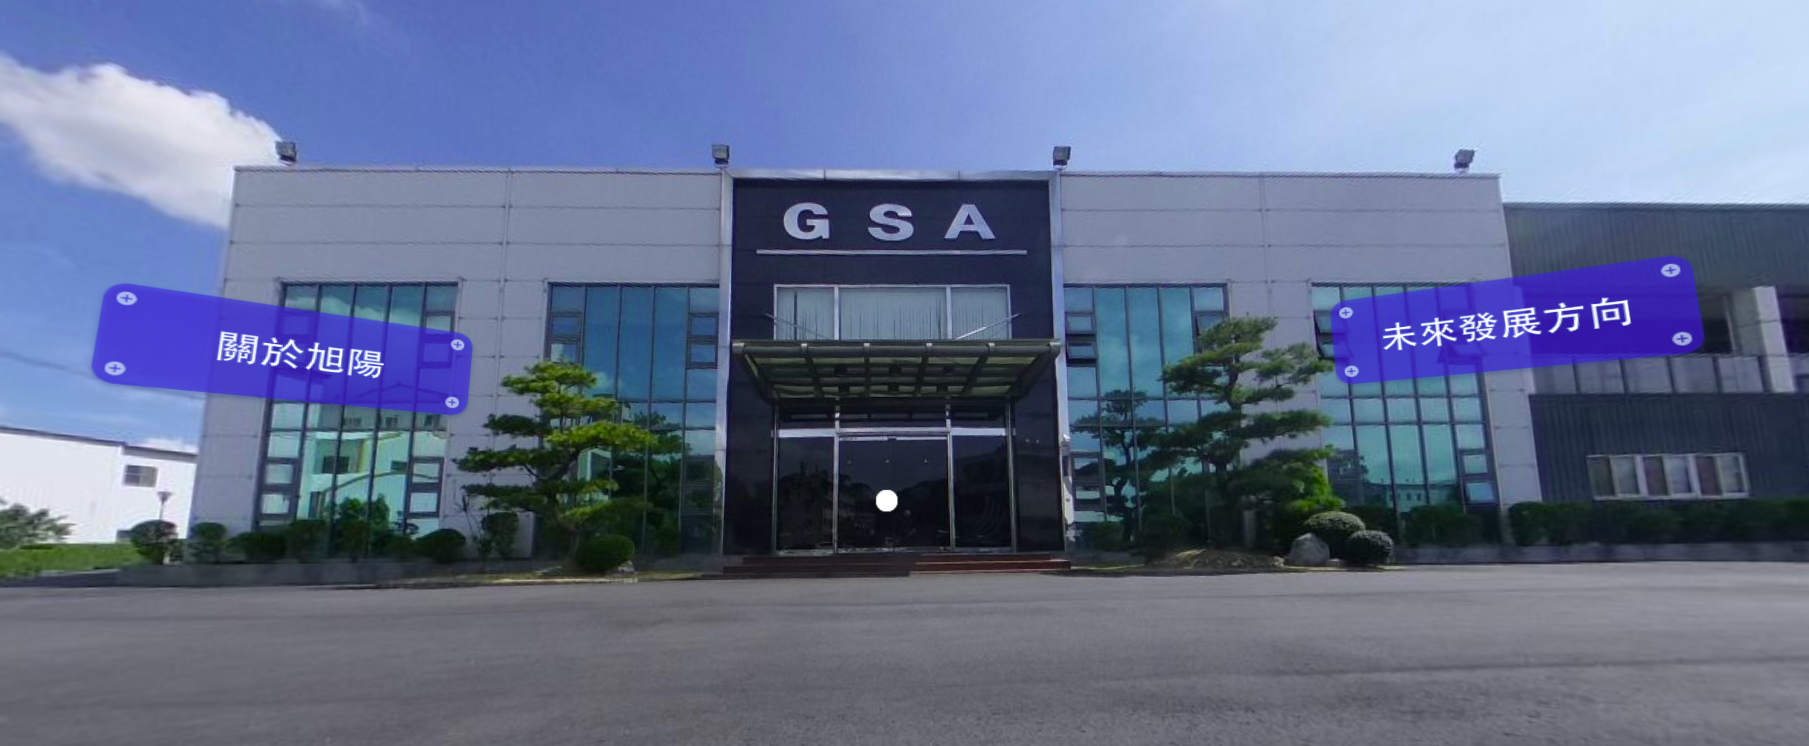 News|GSA+ VR show room